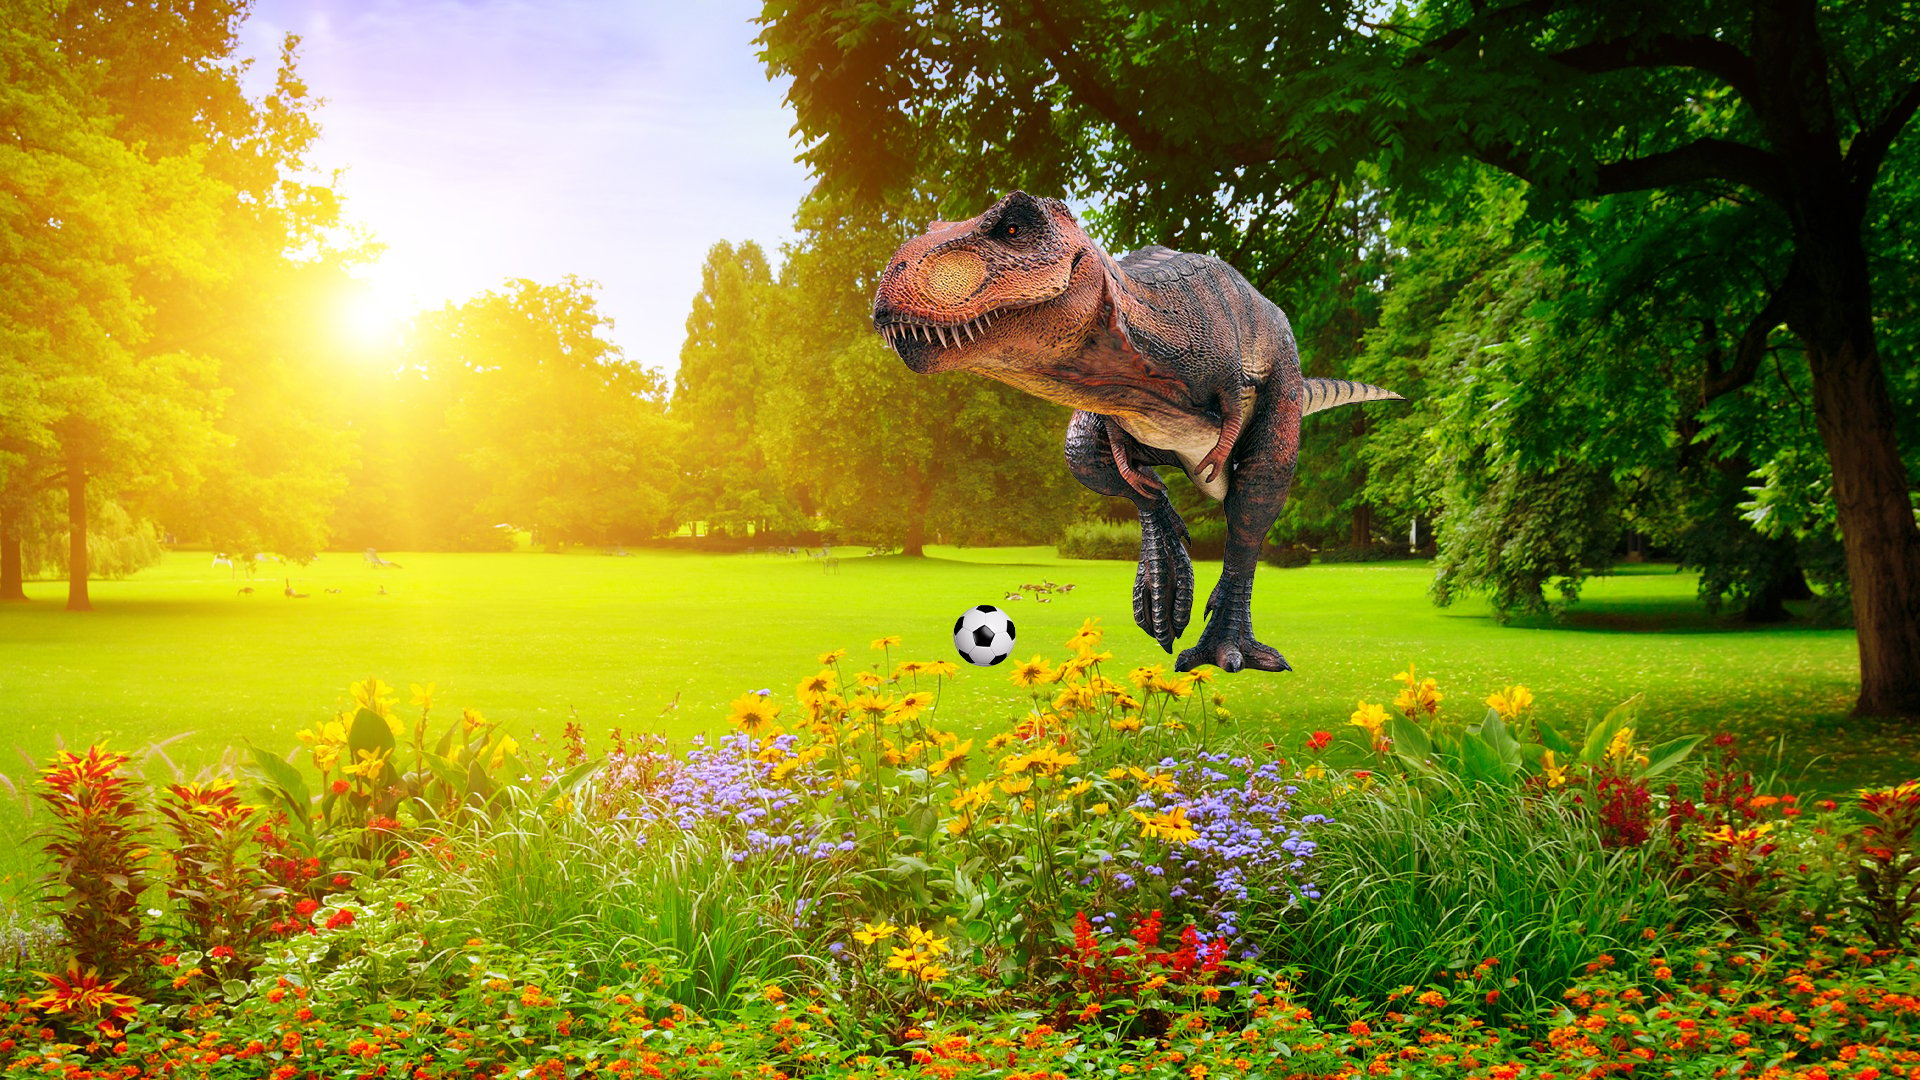 A dinosaur in the park